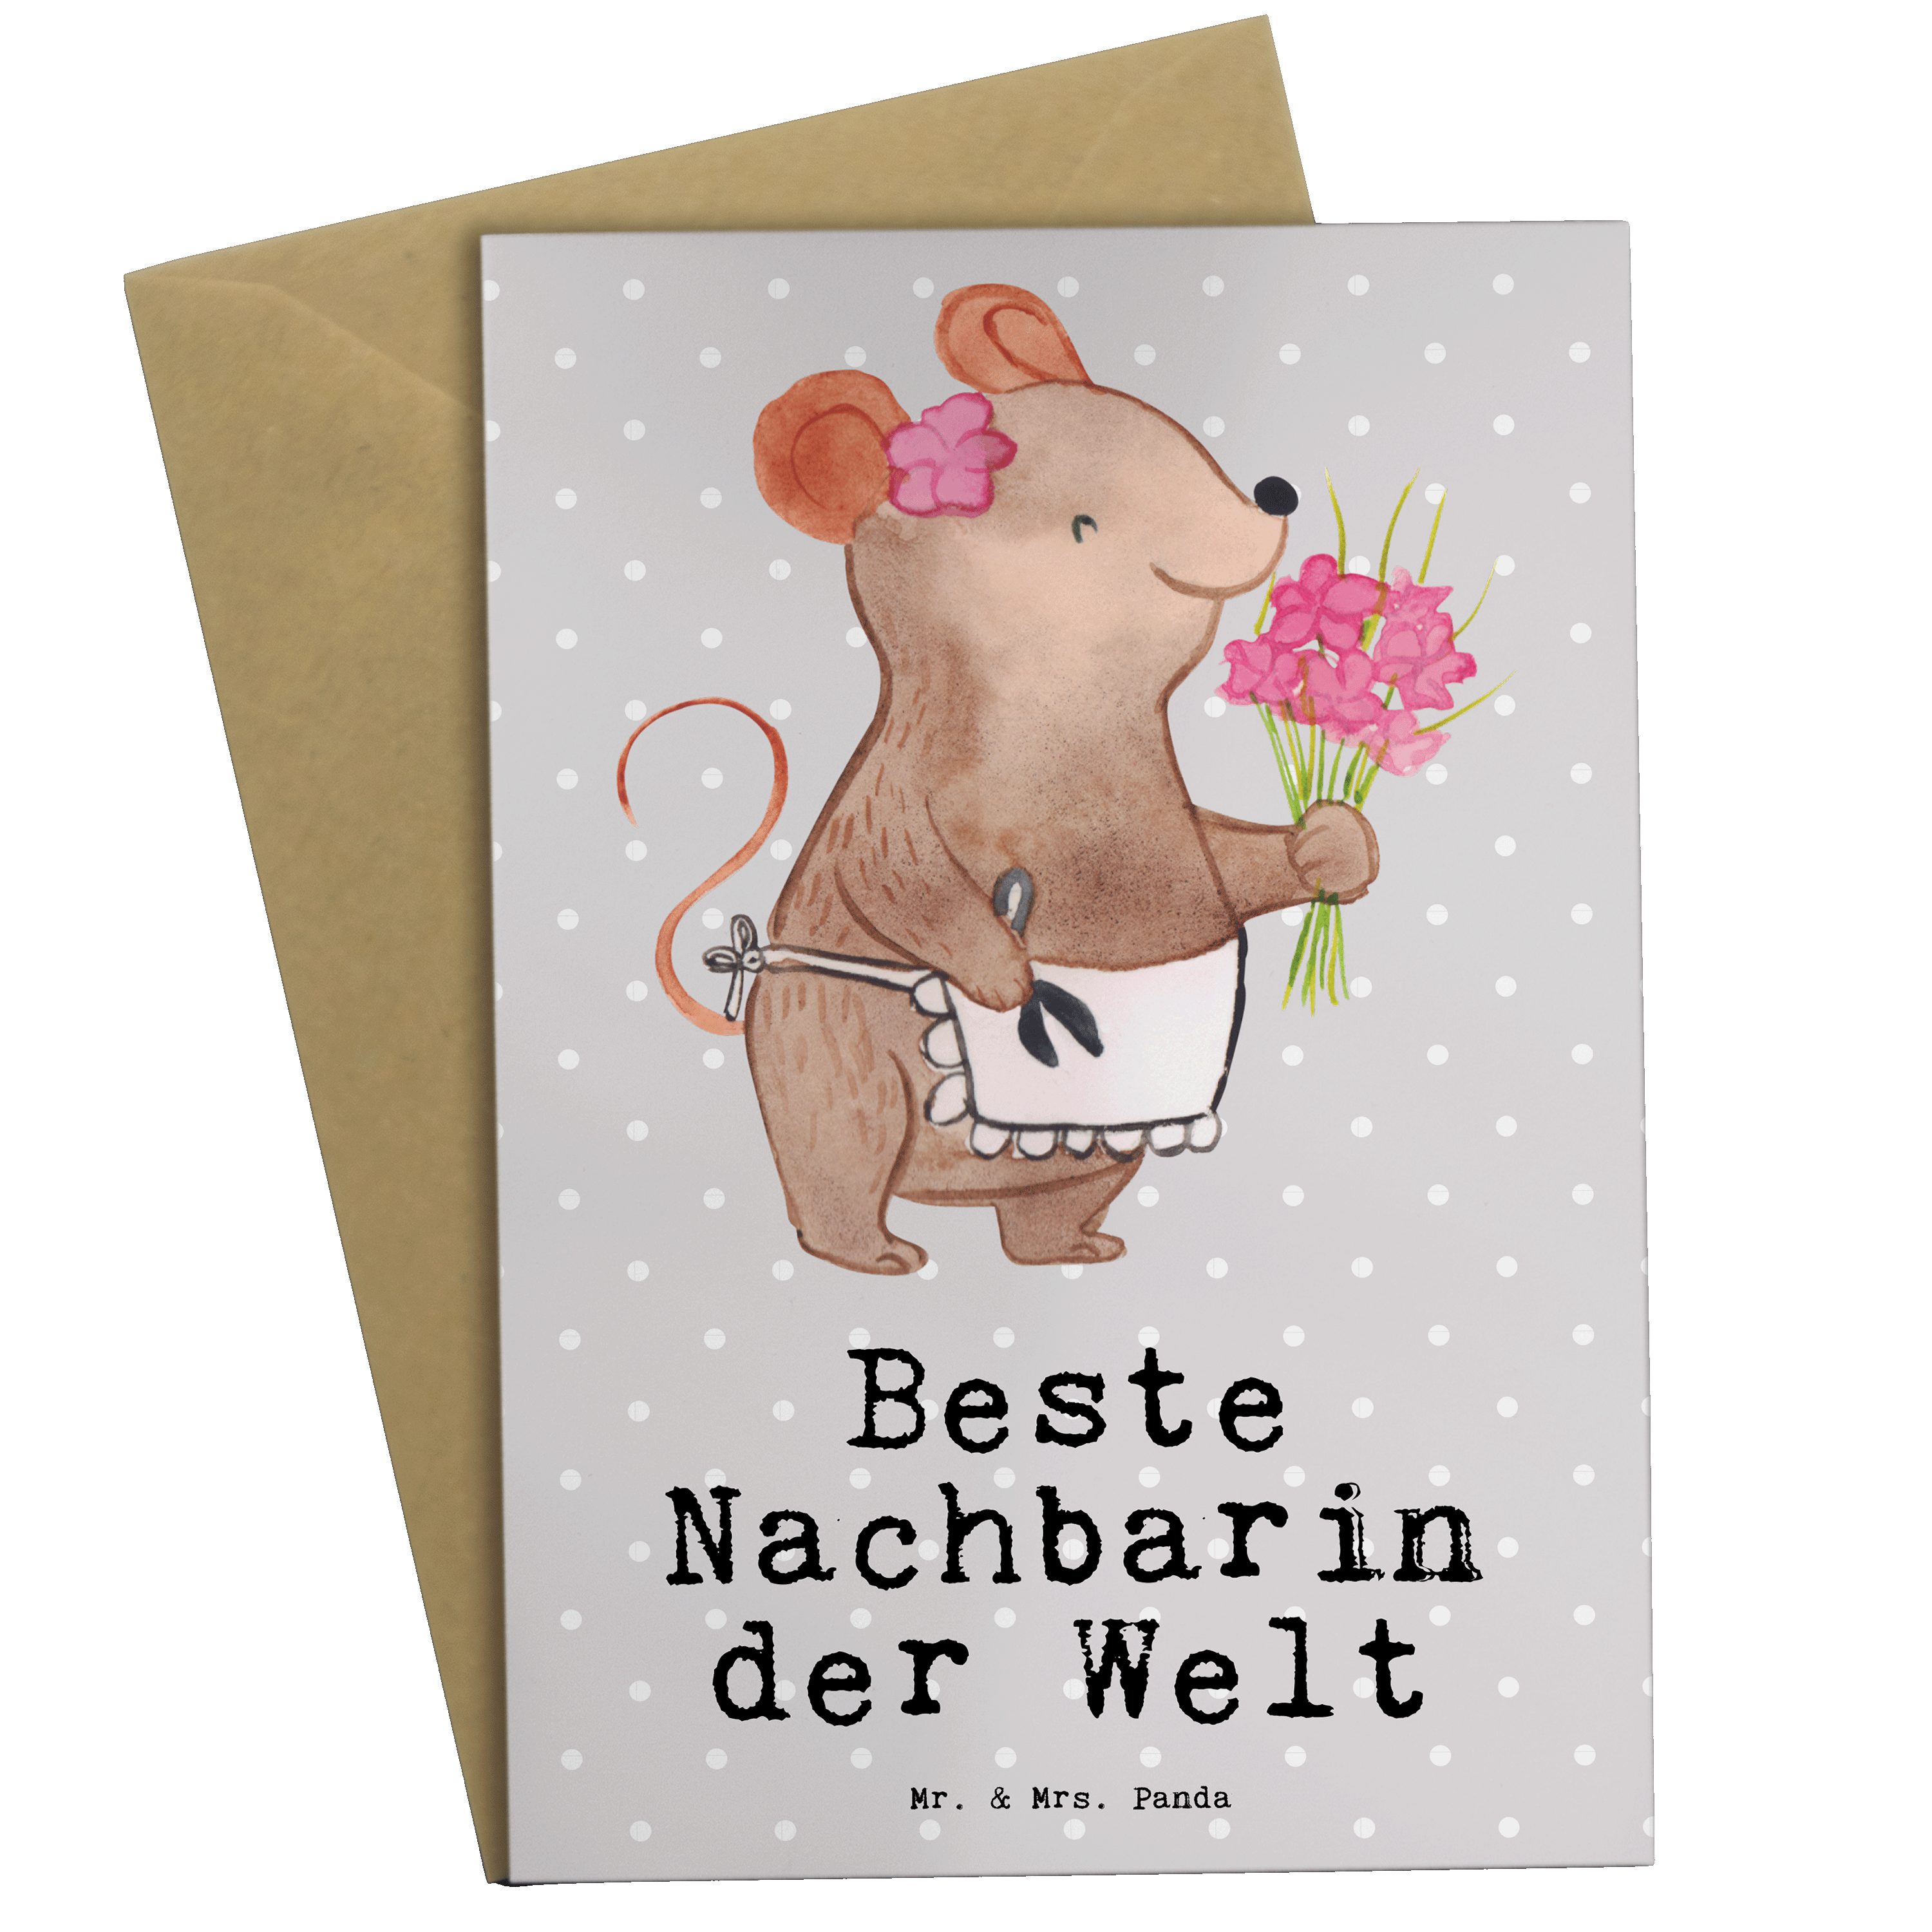 Mr. & Mrs. Panda Grußkarte Maus Beste Nachbarin der Welt - Grau Pastell - Geschenk, Klappkarte